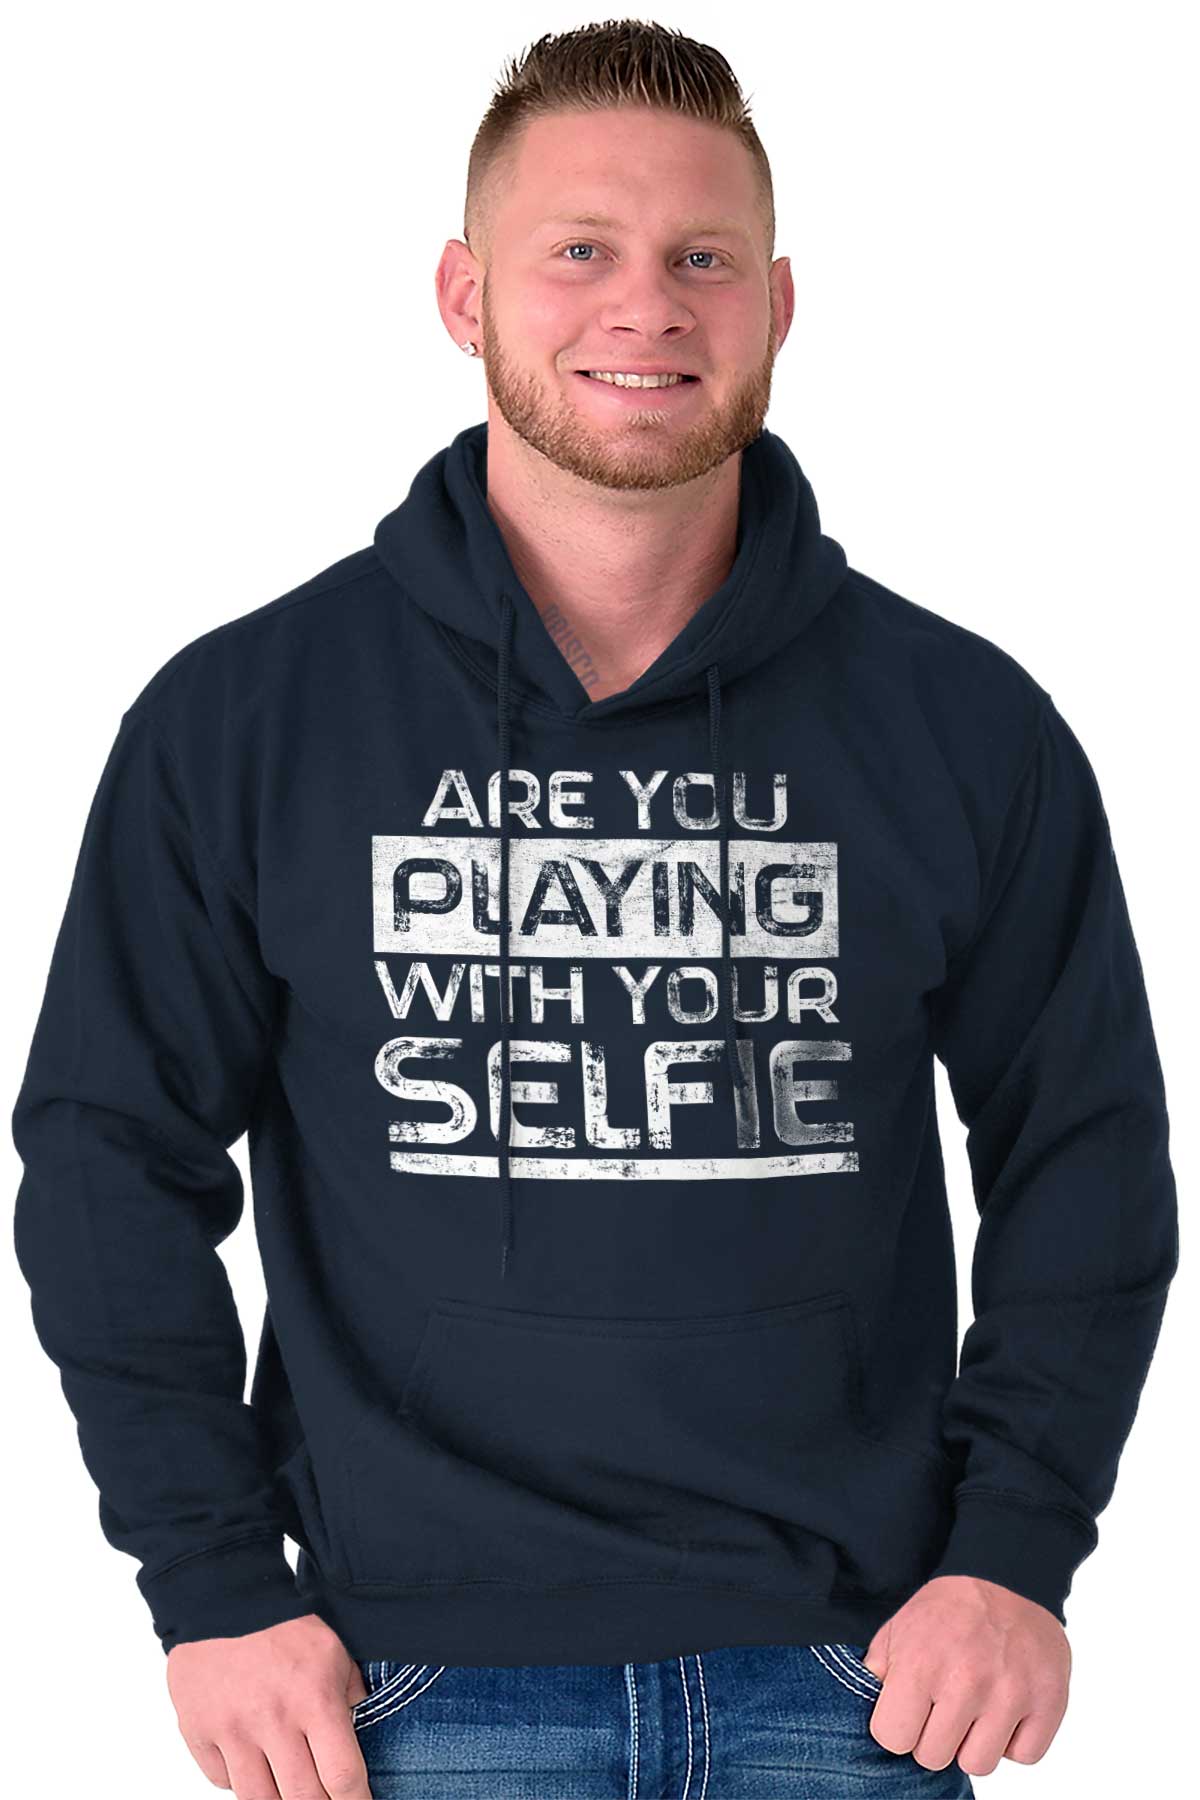 Funny Sayings Adult Humor Offensive Selfie Mens Hooded Sweatshirts ...